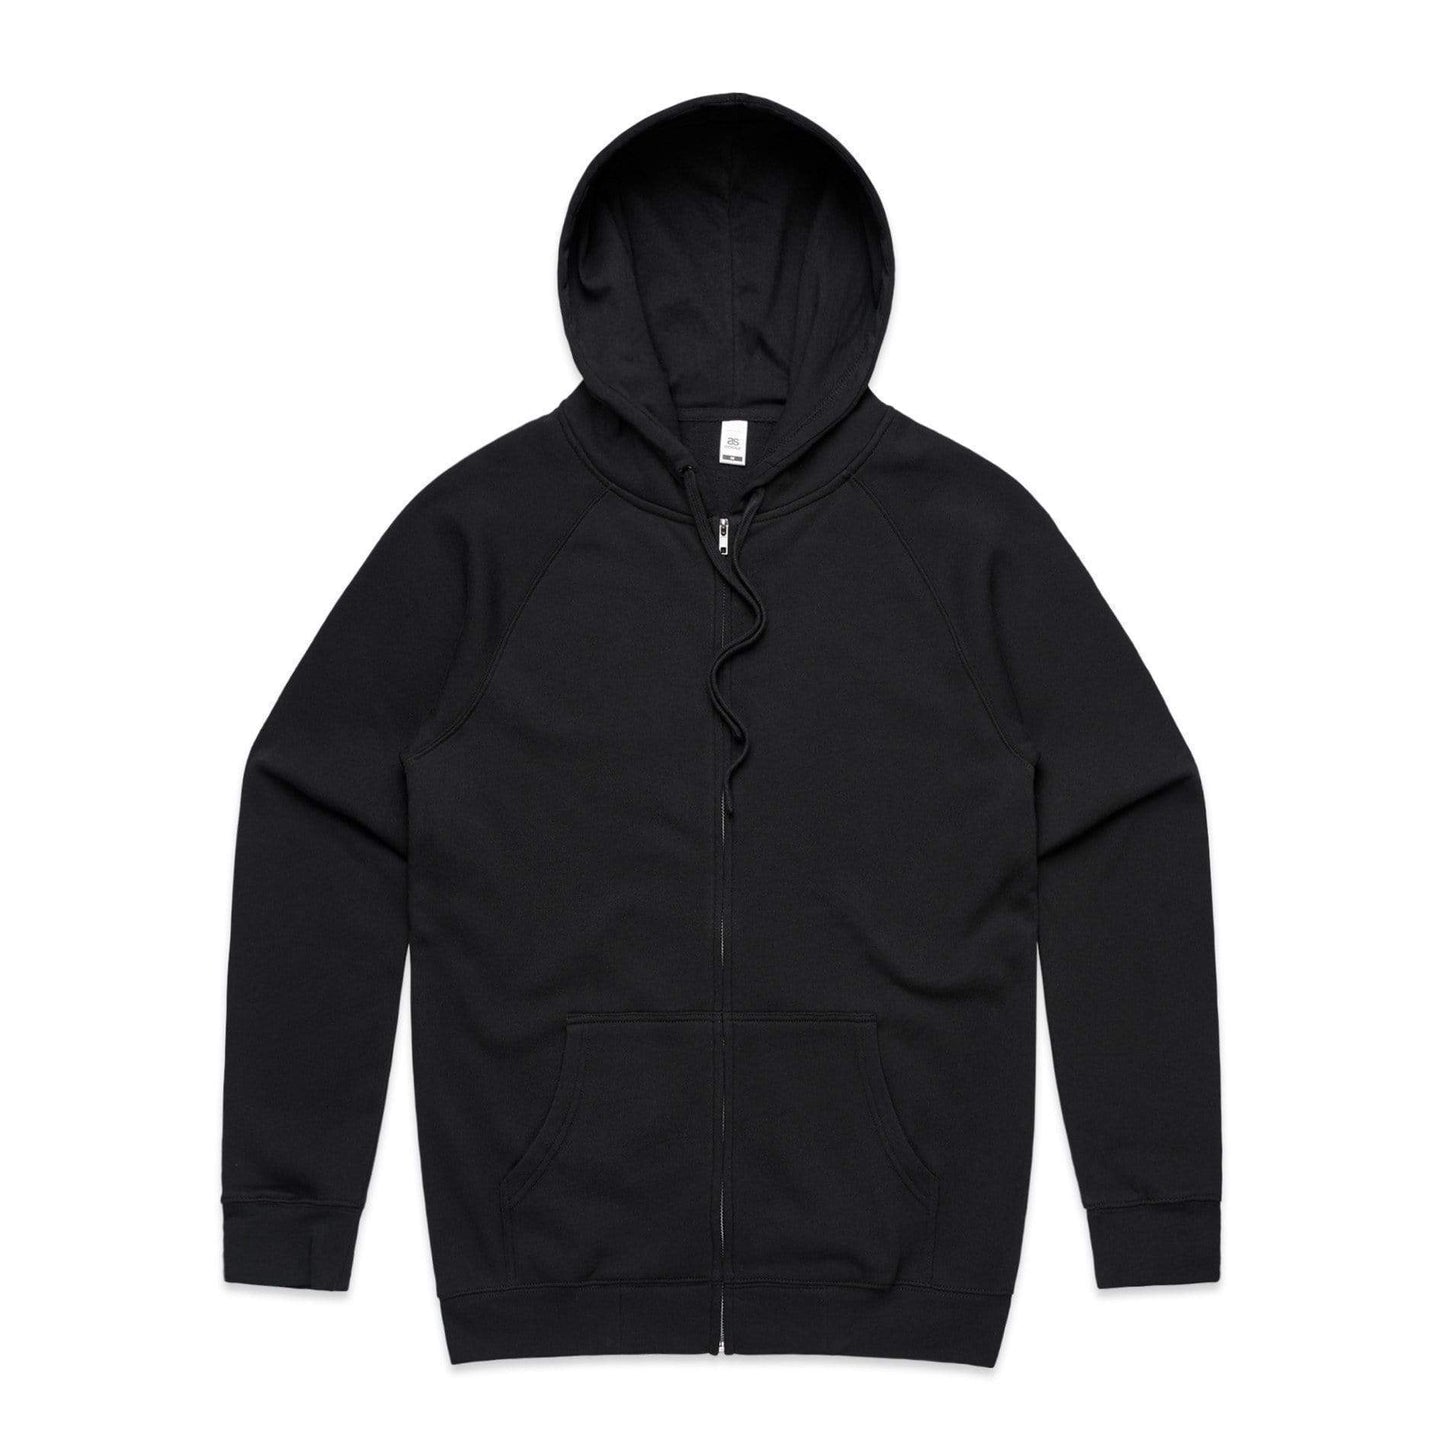 As Colour Casual Wear BLACK / XSM As Colour Men's official zip hoodie 5103